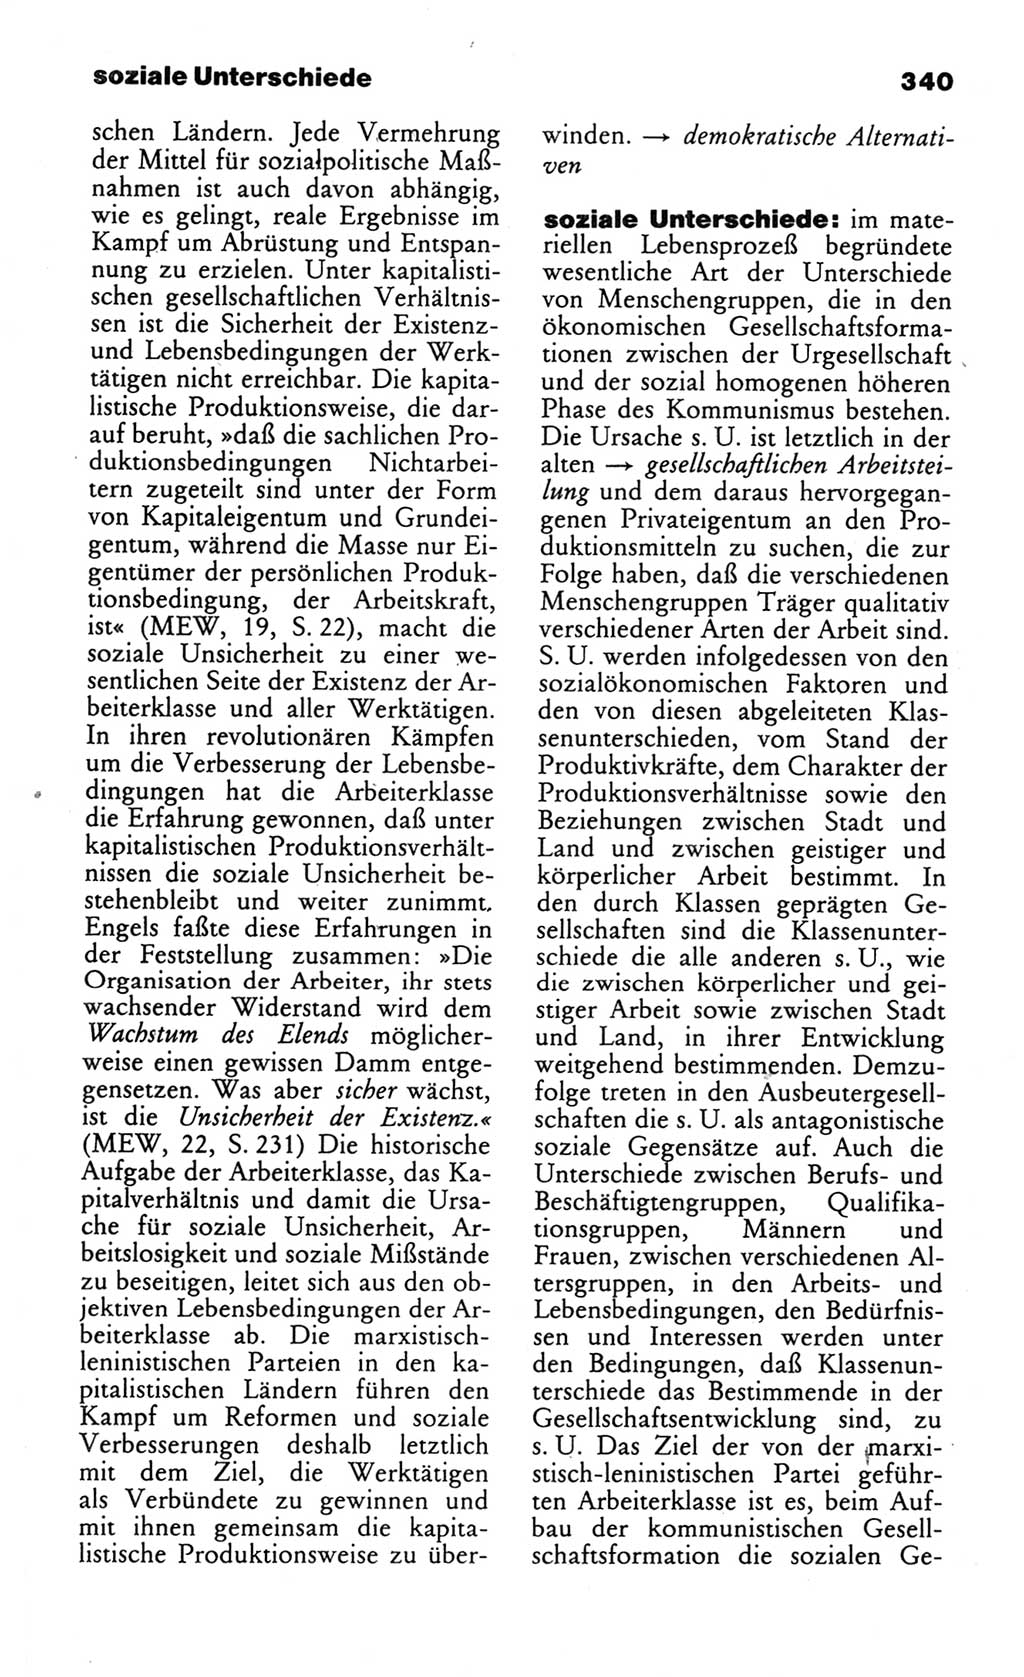 Wörterbuch des wissenschaftlichen Kommunismus [Deutsche Demokratische Republik (DDR)] 1984, Seite 340 (Wb. wiss. Komm. DDR 1984, S. 340)